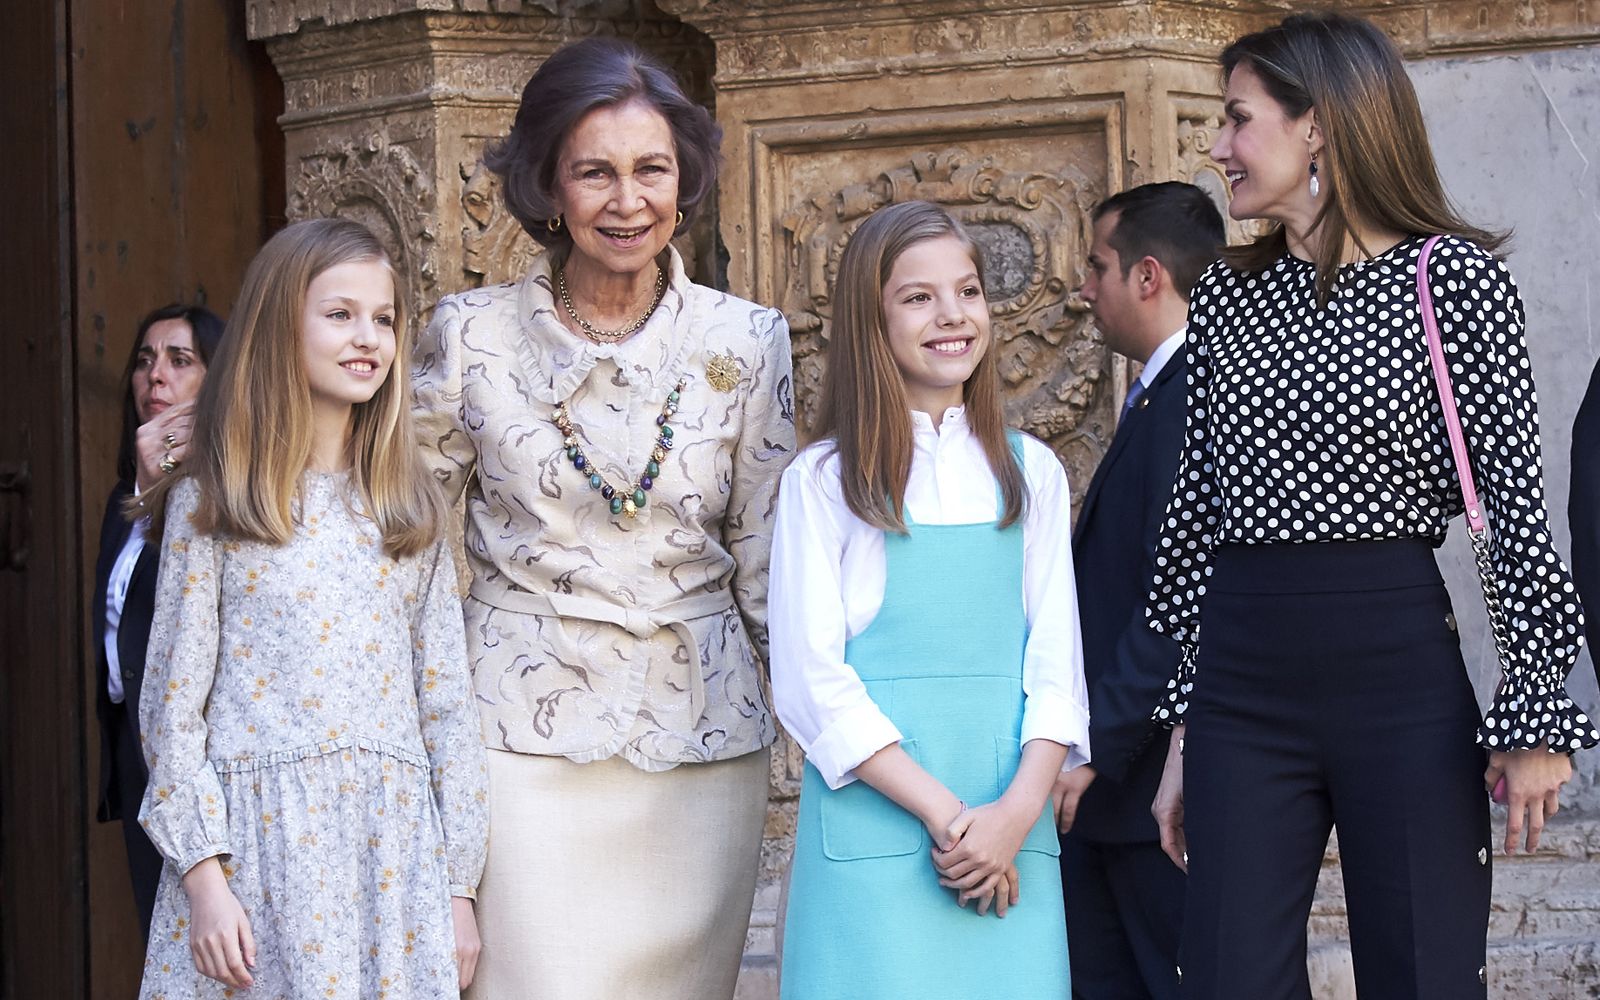 スペイン王室の嫁vs姑が激写 レティシア王妃がソフィア妃と王女たちの写真撮影を阻止